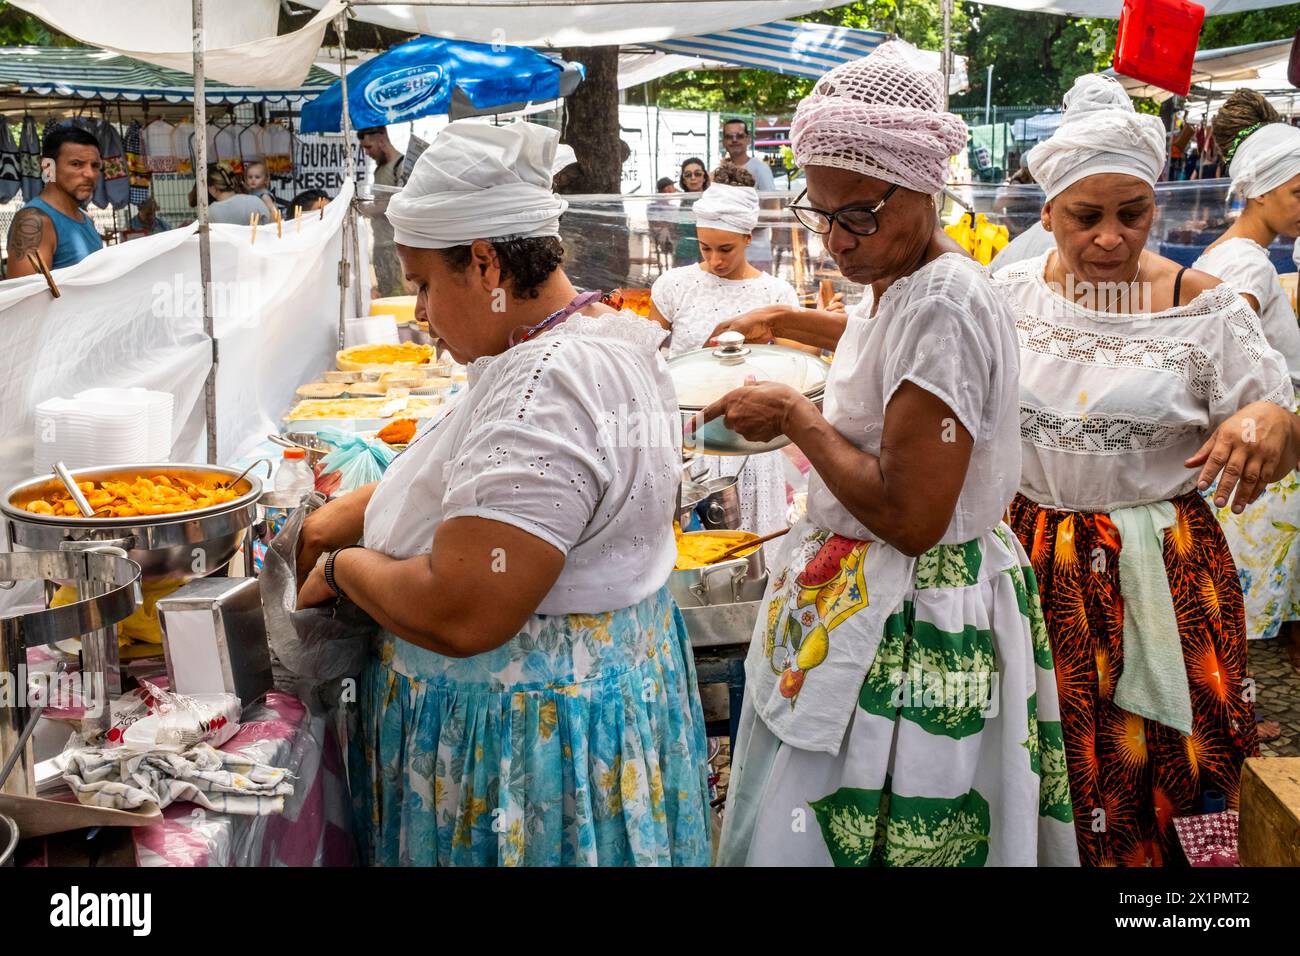 Femmes brésiliennes en costume traditionnel cuisiner et préparer la nourriture dans Un café au marché du dimanche d'Ipanema (foire hippie), Rio de Janeiro, Brésil Banque D'Images